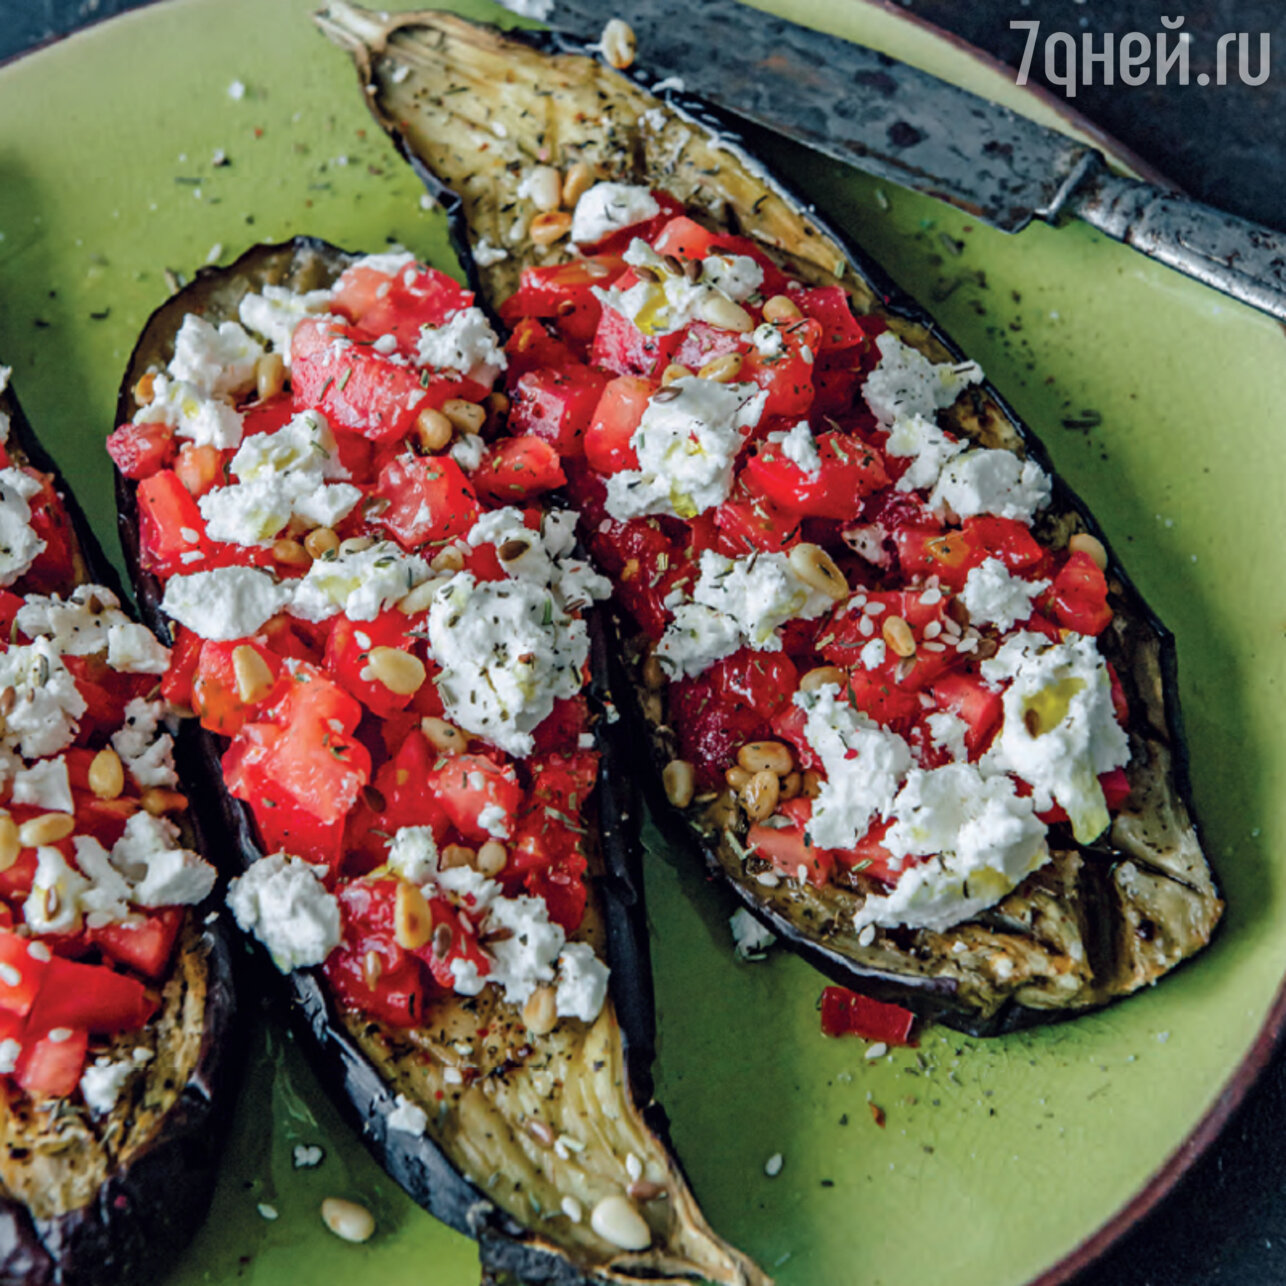 Запеченный баклажан с фетой, томатами и кедровыми орешками: пошаговый рецепт c фото